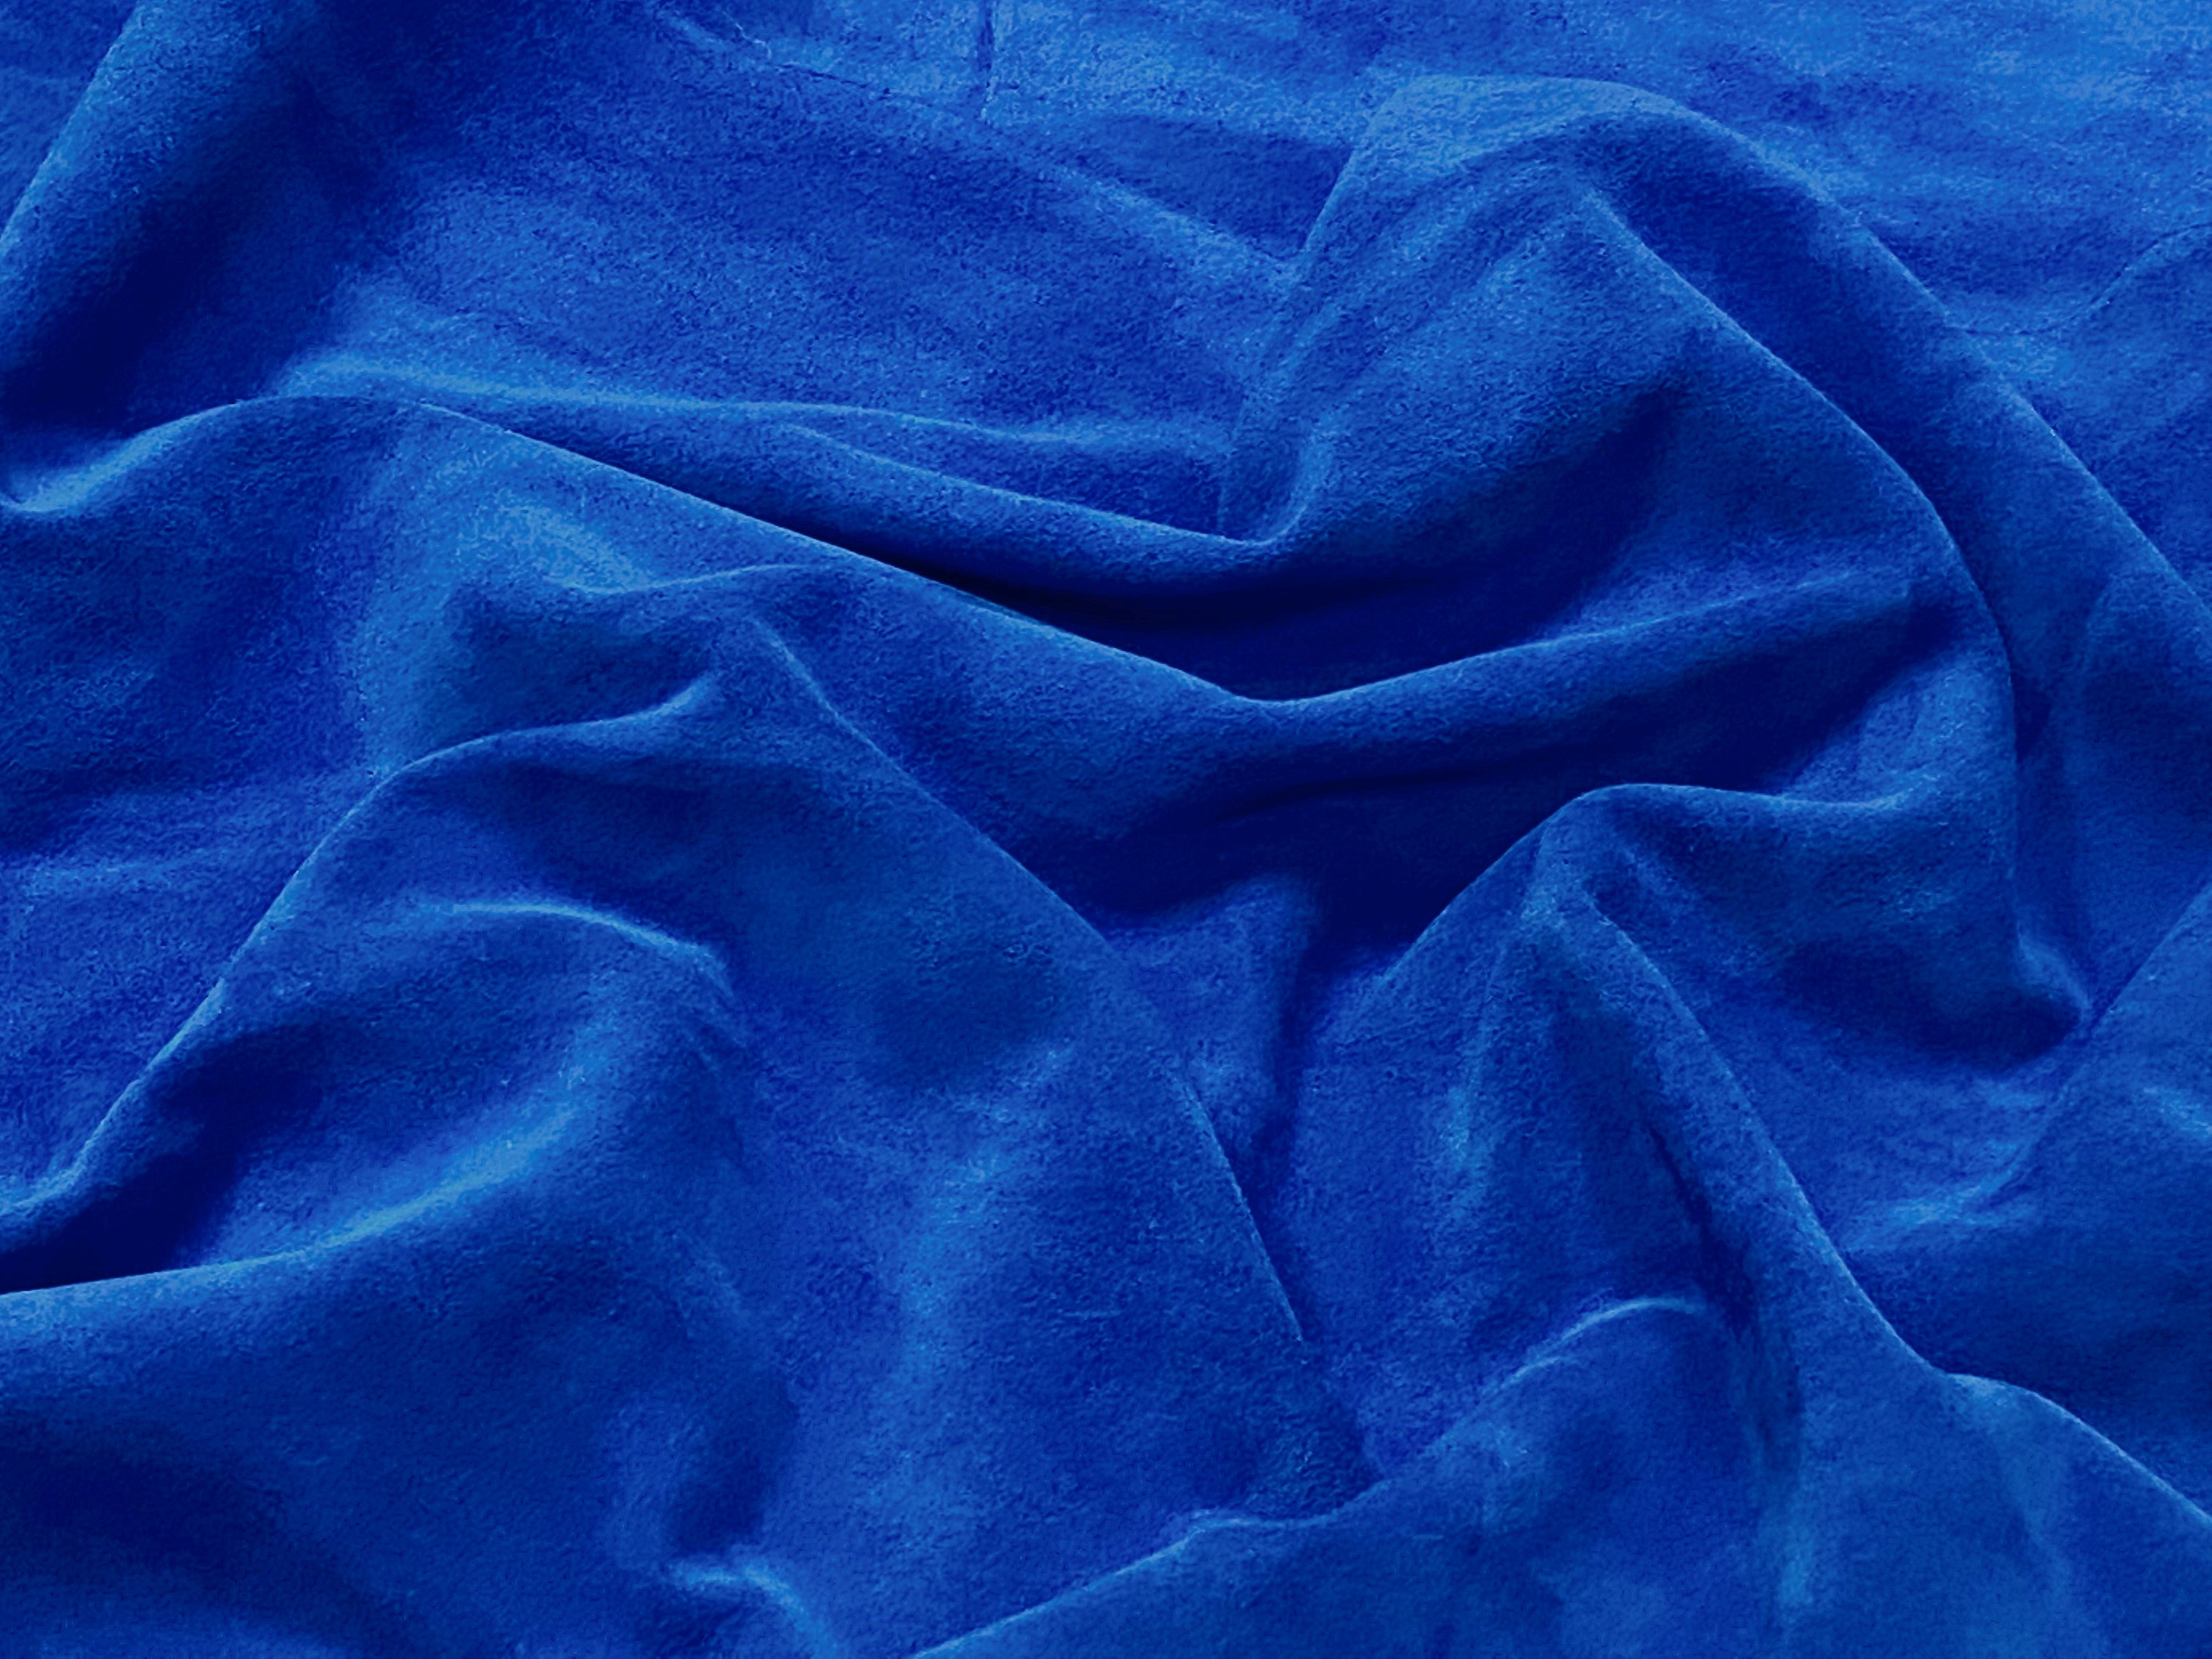 Royal Blue, Split Suede : (1.1mm-1.2mm 3oz) 15